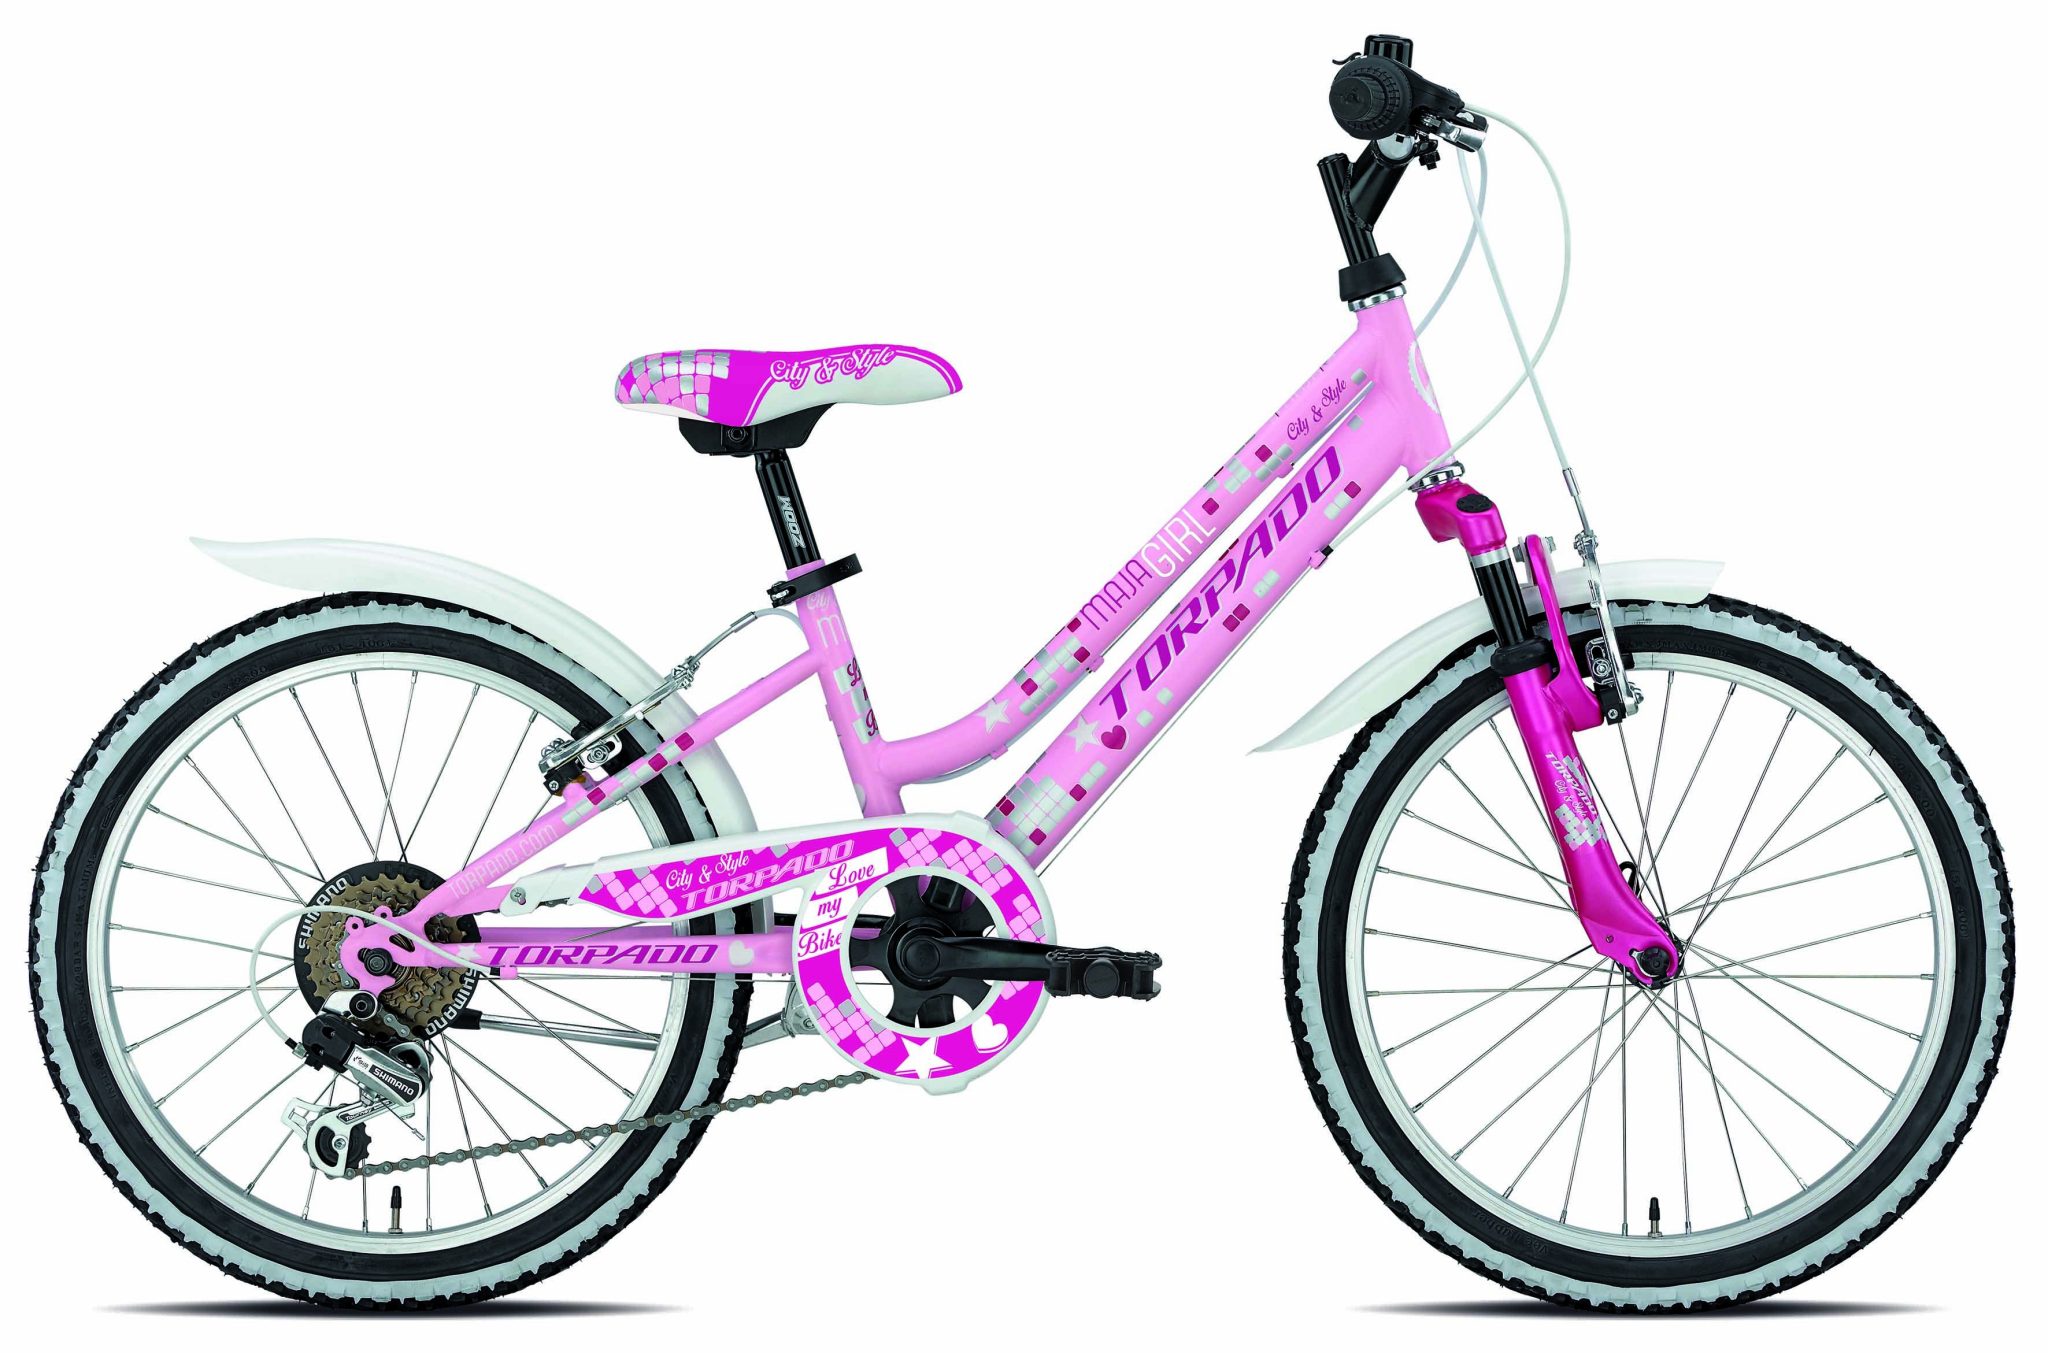 Купить детский велосипед для девочки авито. Велосипед стелс 24 дюйма для девочки. Стелс 24 дюйма для девочки. Велосипед stels для девочки 7-10. Велосипед stels для девочки.